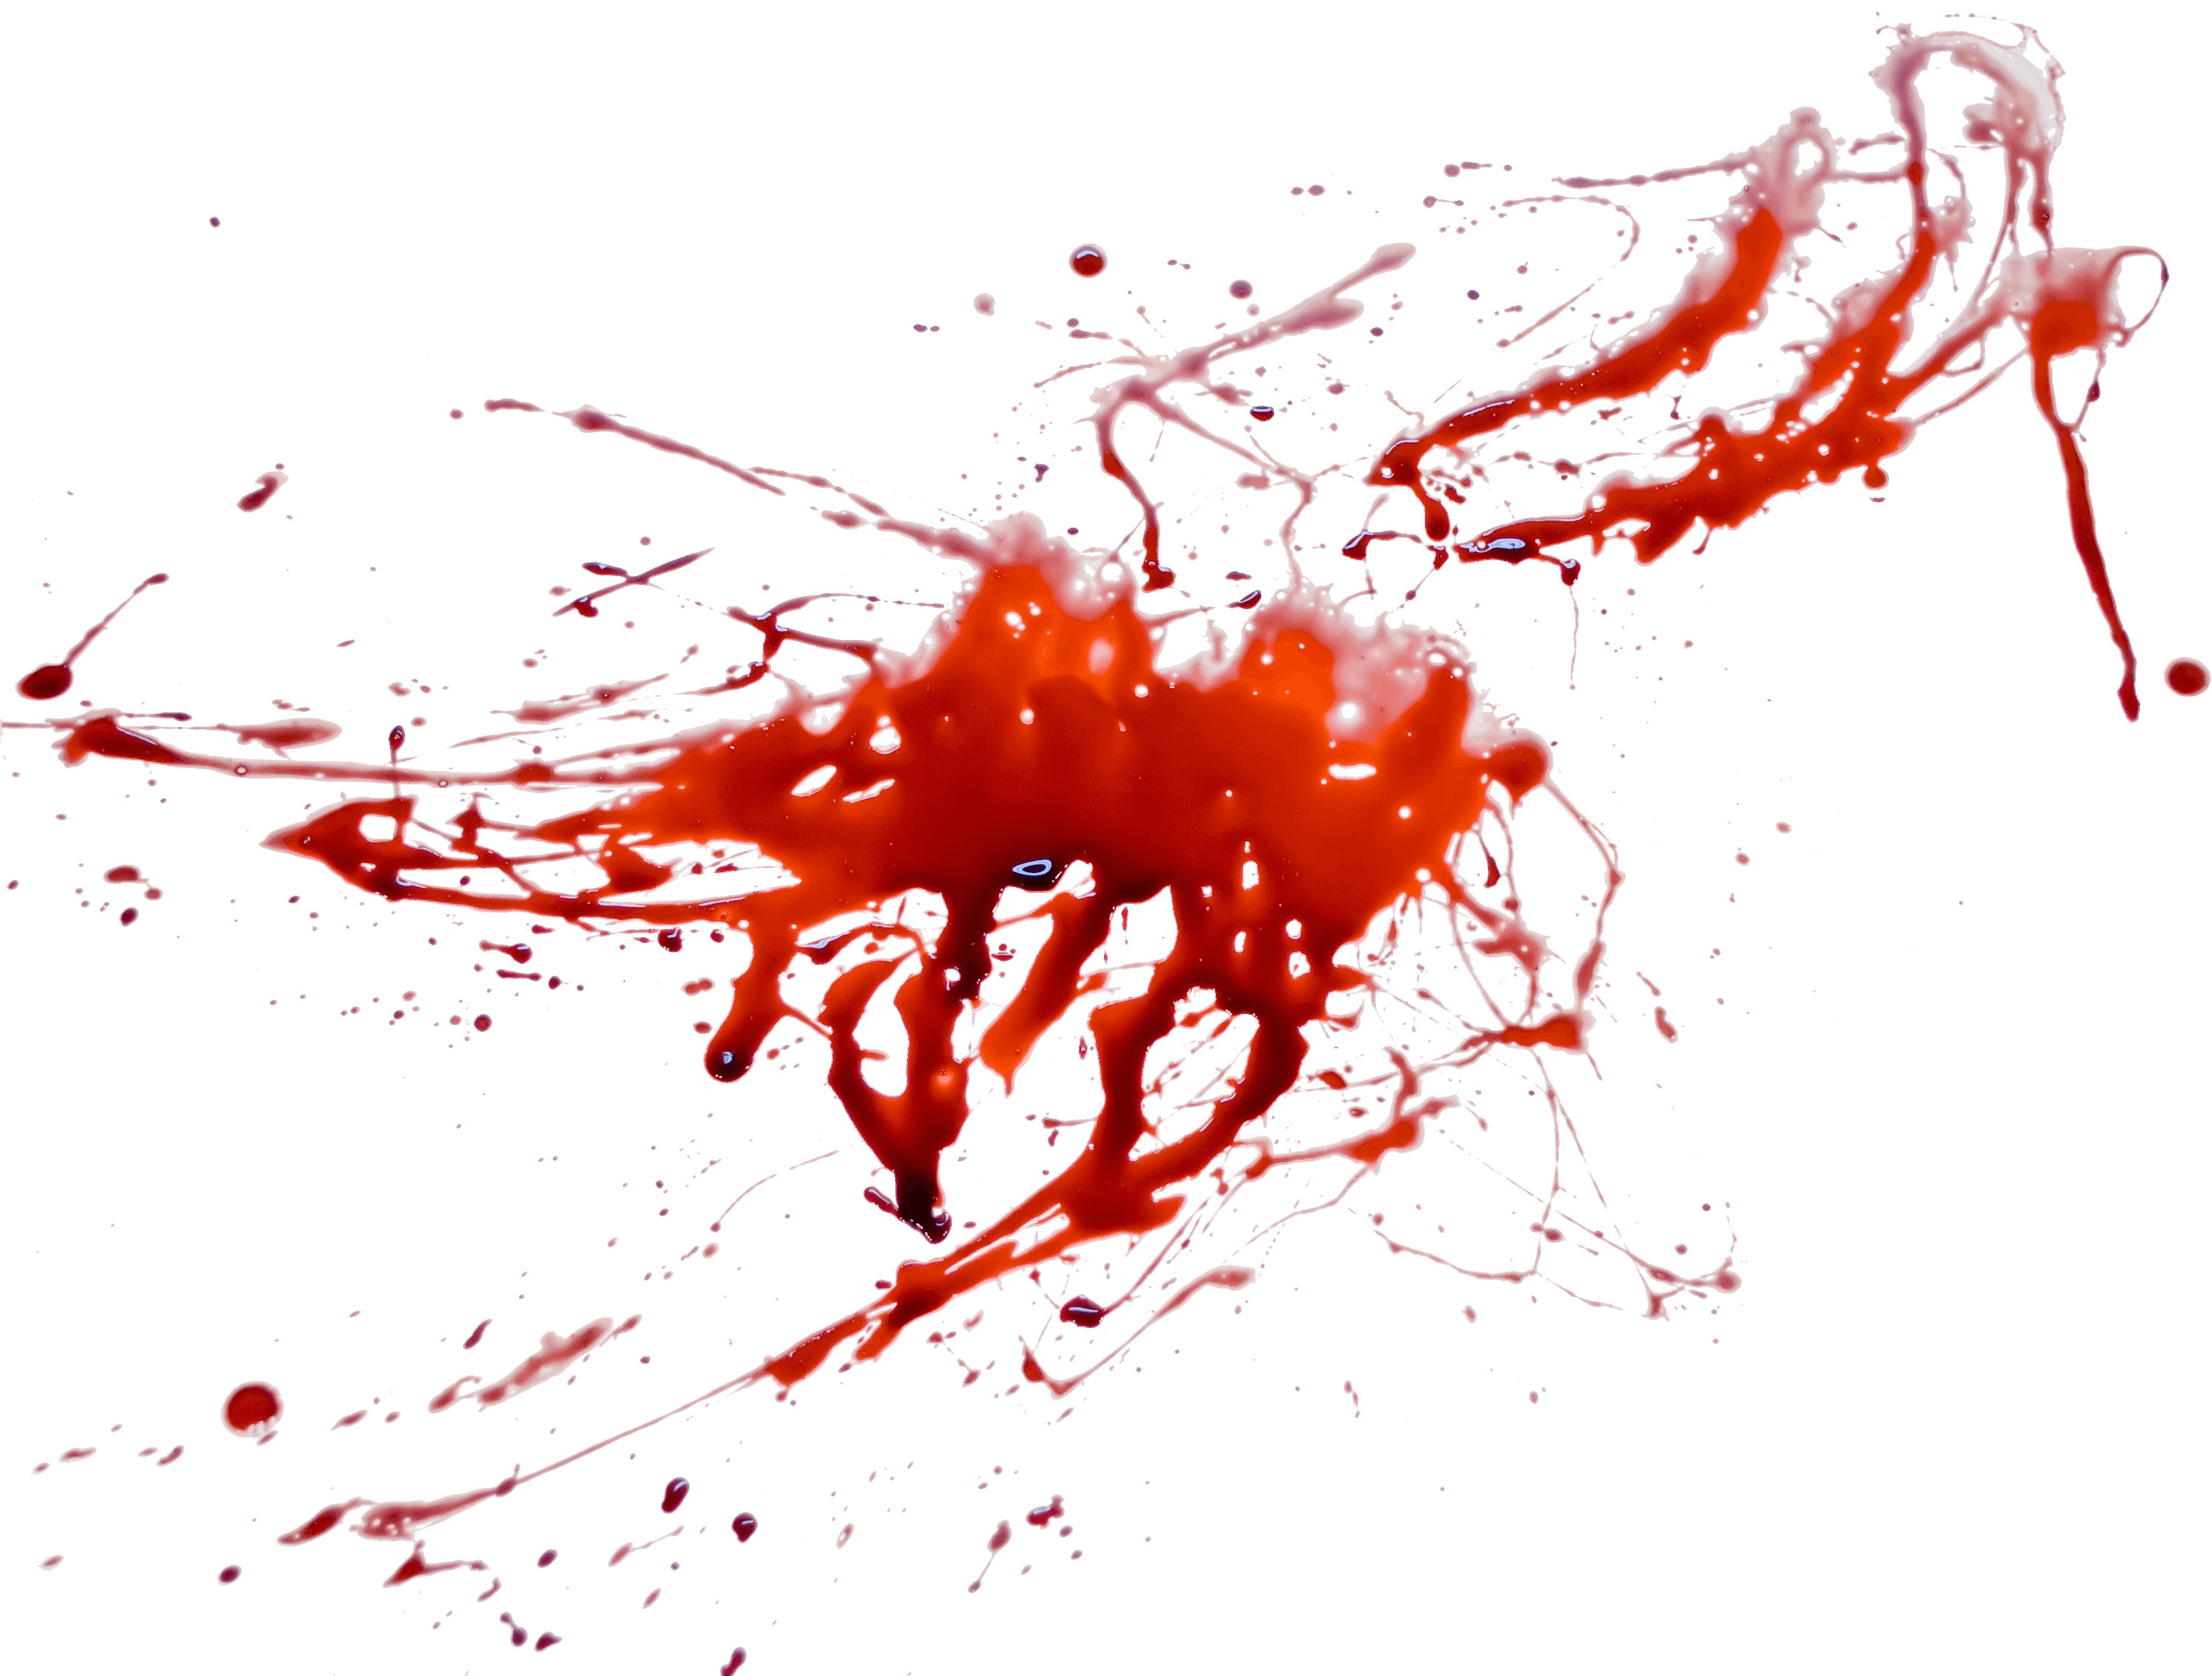 Imagen Transparente de humo rojo de sangre